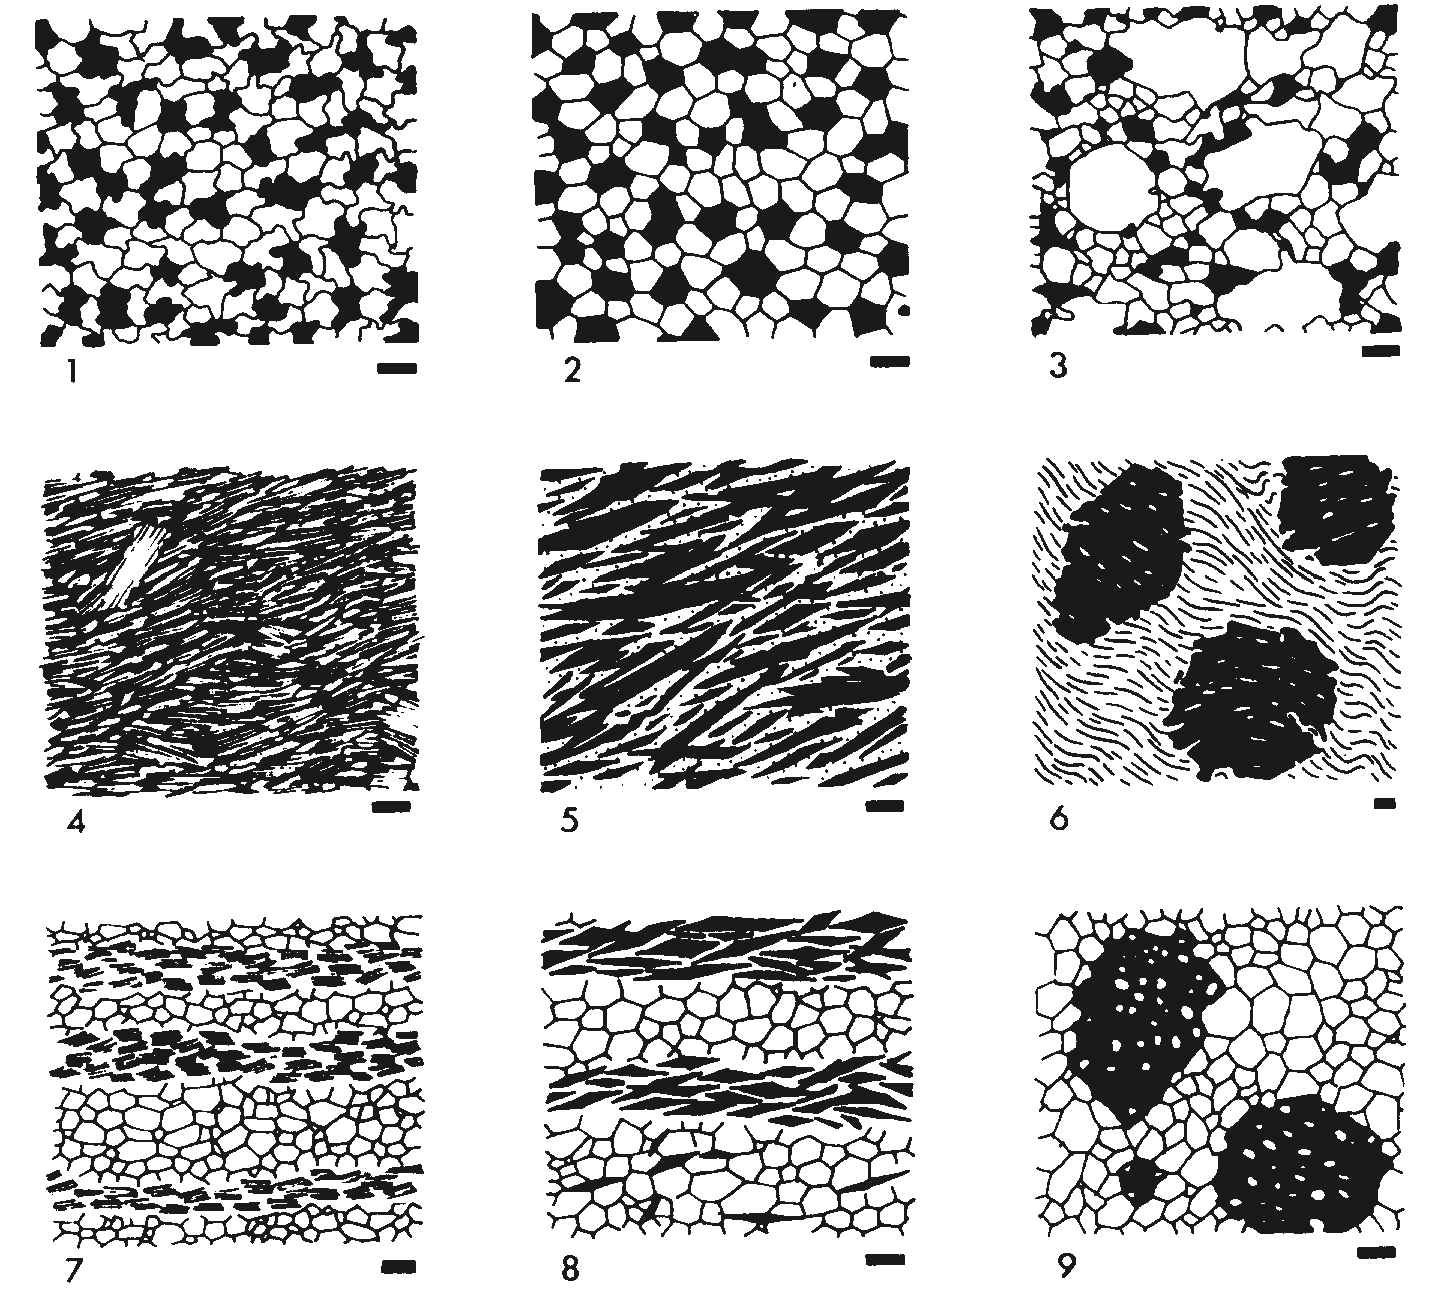 Tema 0: Conocimientos previos Petrología Endógena 2 (a) granoblástica equigranular: mosaico equigranular panalotriomorfo de cristales equidimensionales (Figura 2, esquema 1), (b) granoblástica